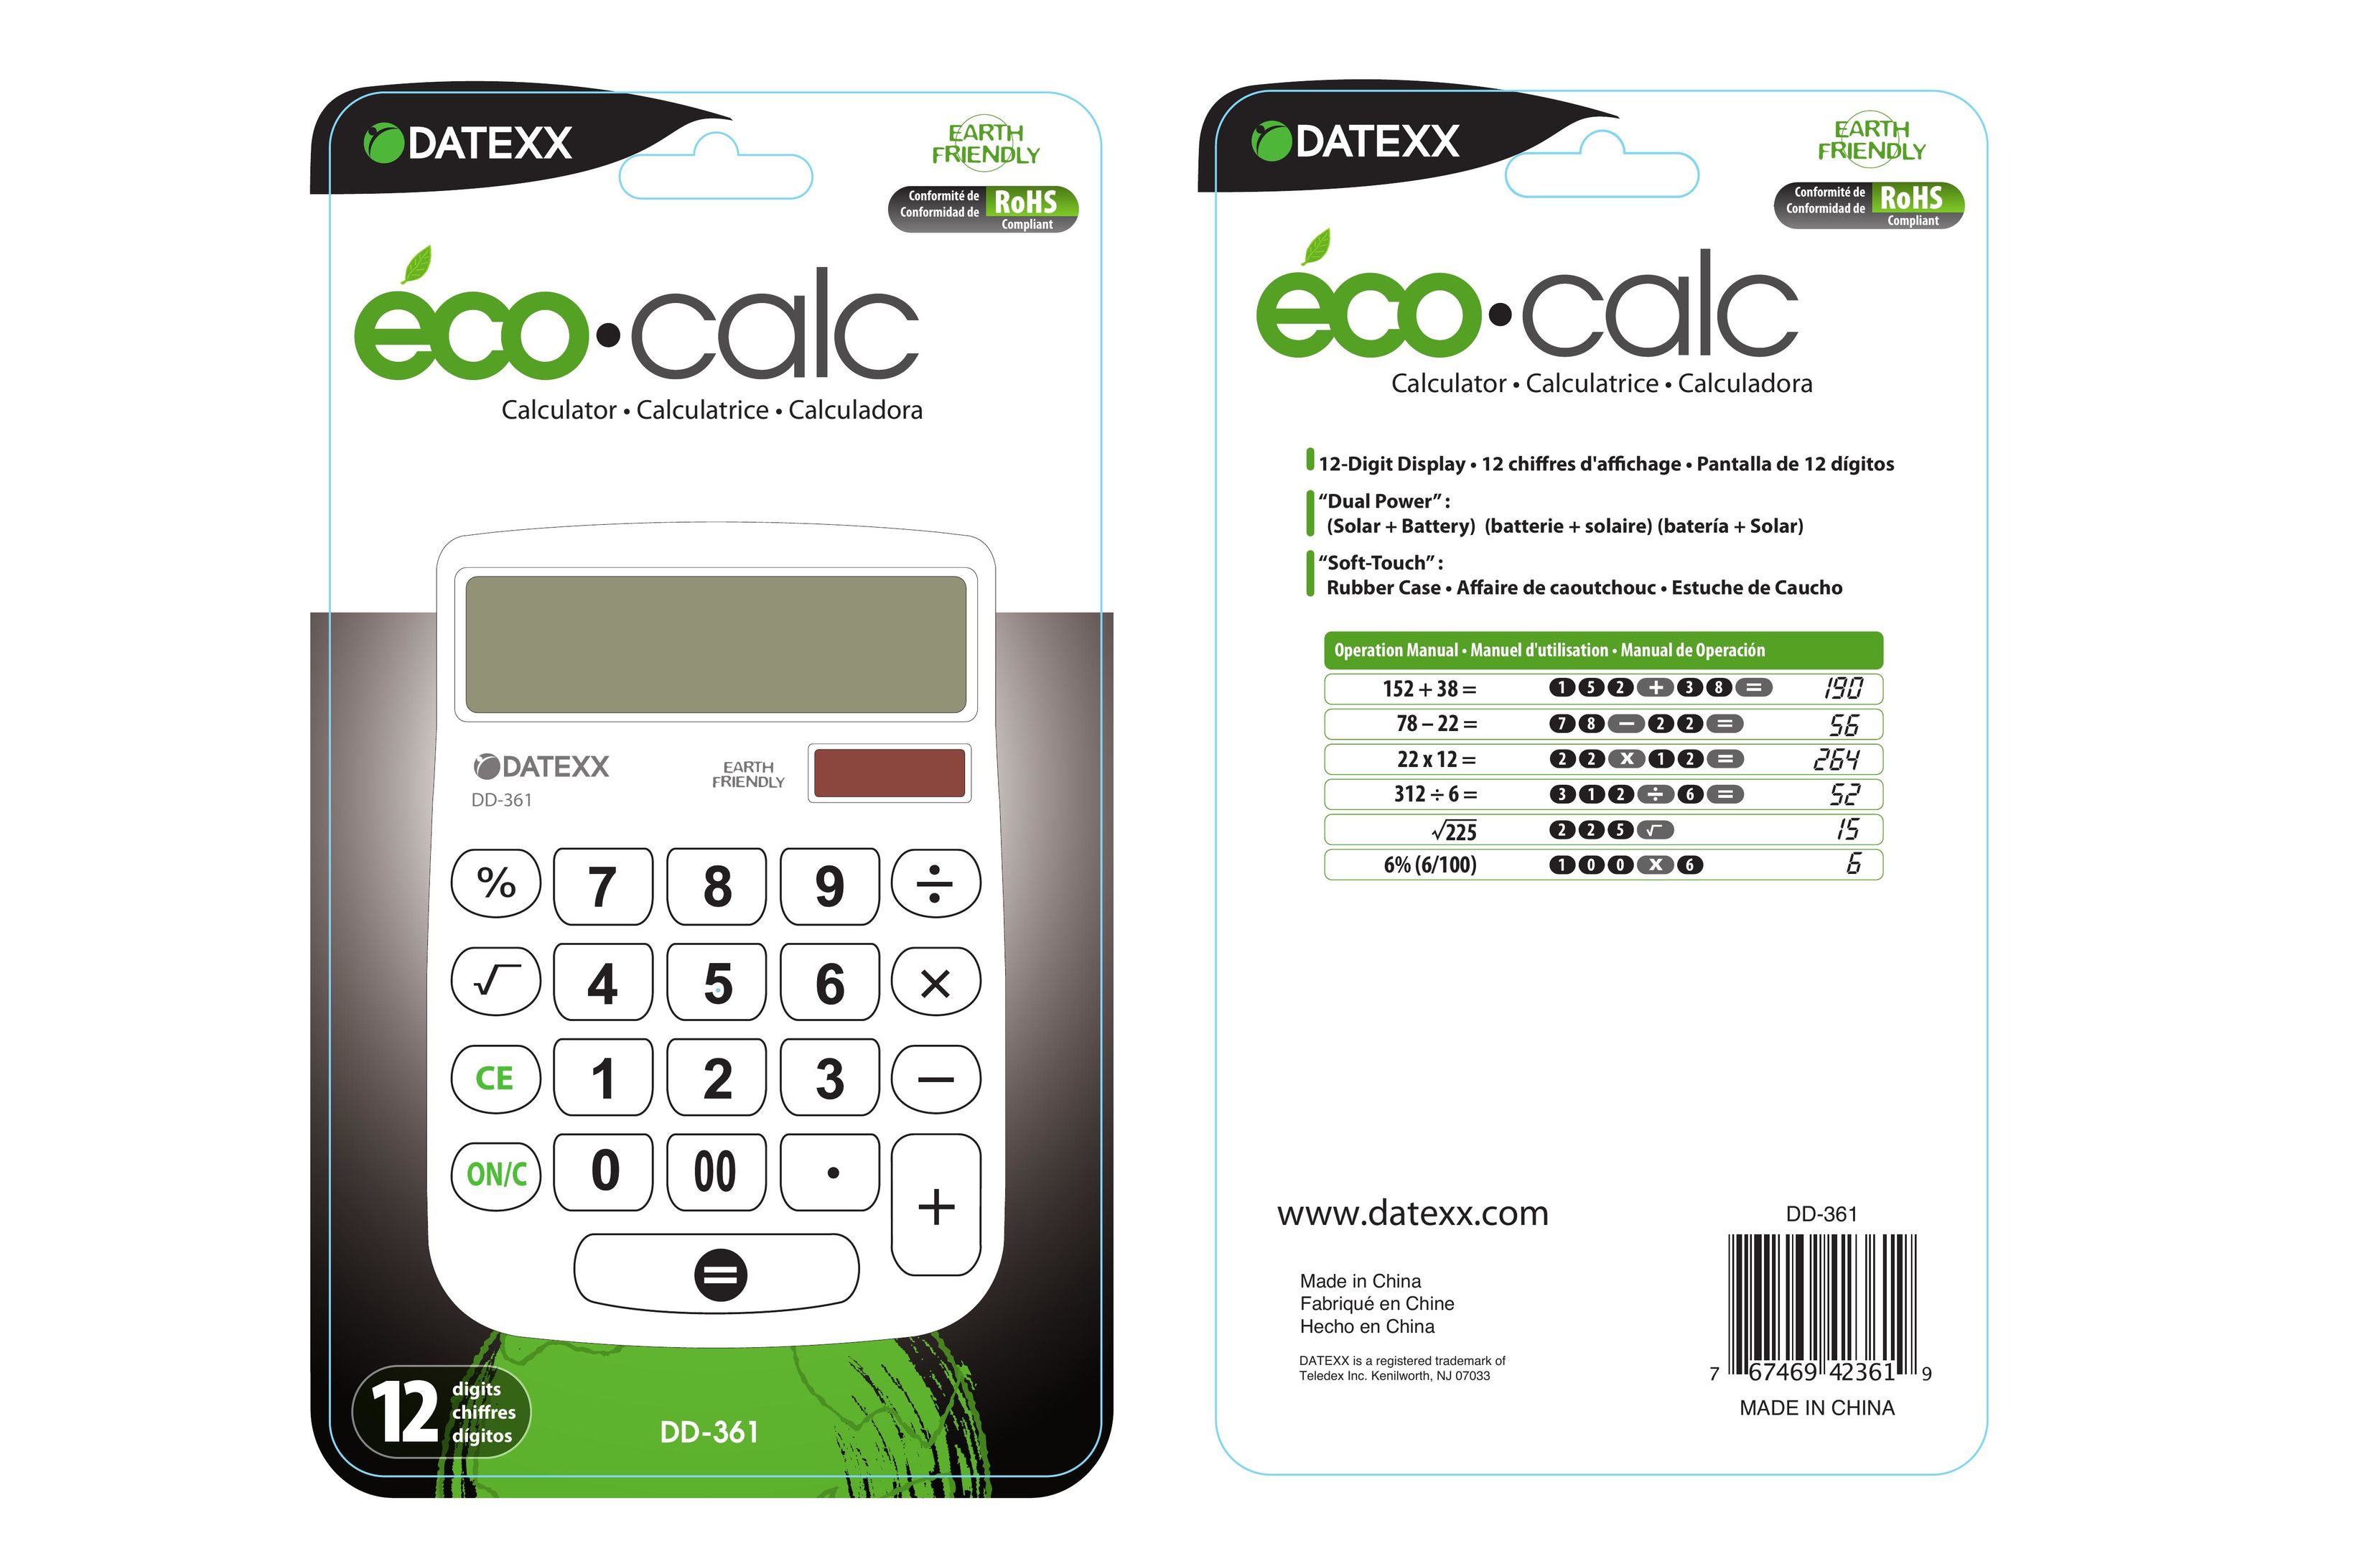 Datexx DD-361 Calculator User Manual